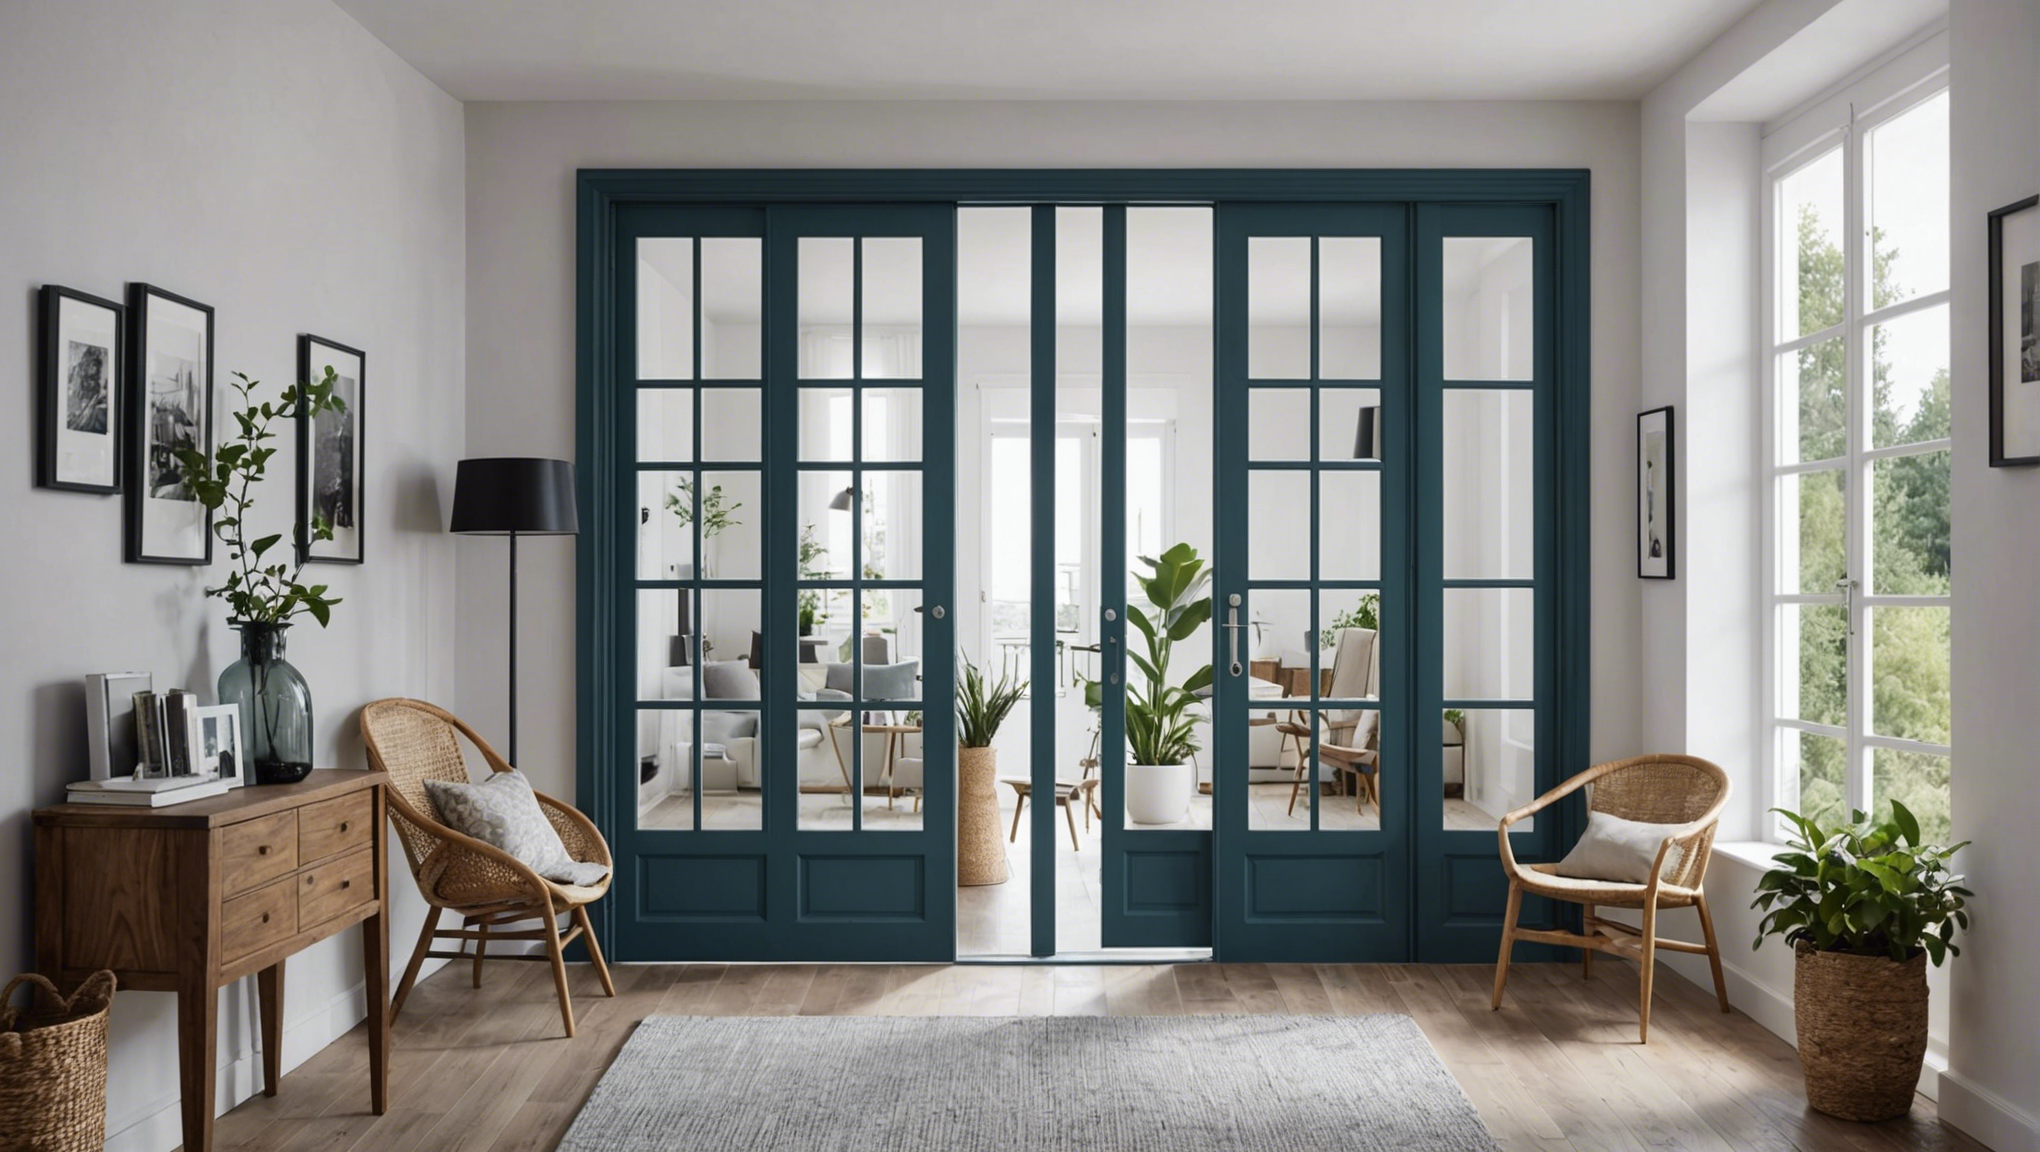 découvrez nos conseils pour choisir les meilleures fenêtres et portes afin d'embellir et d'améliorer votre intérieur.